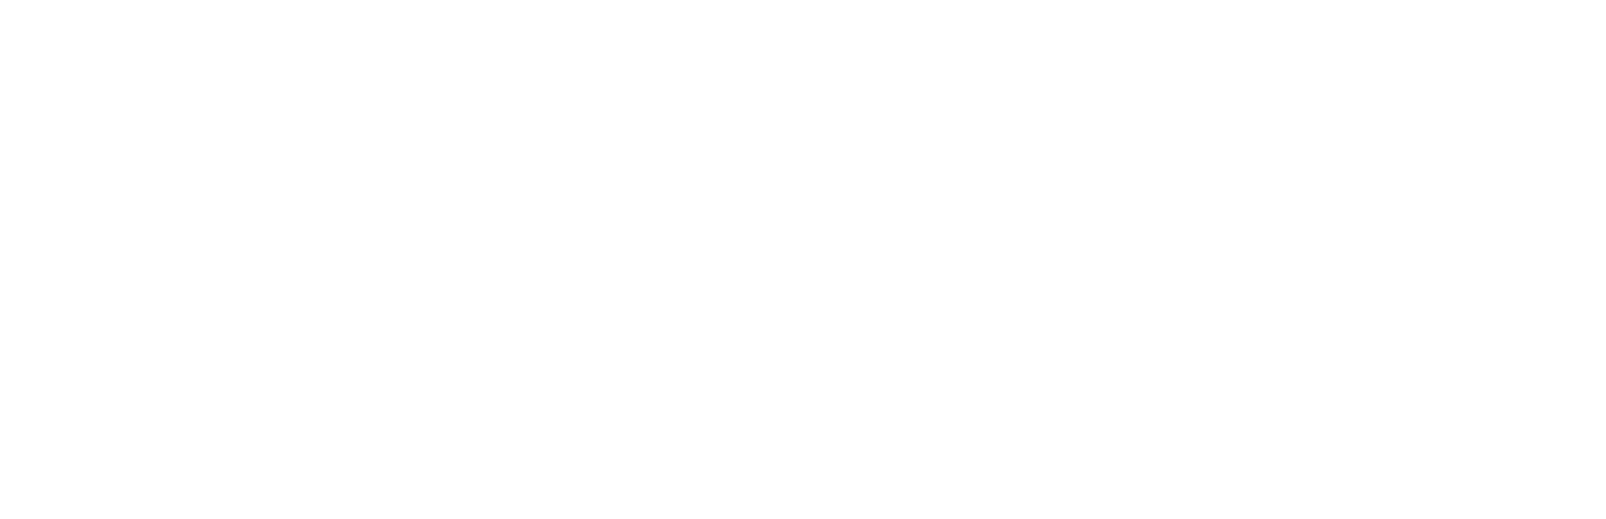 Zebra Technologies logo grand pour les fonds sombres (PNG transparent)